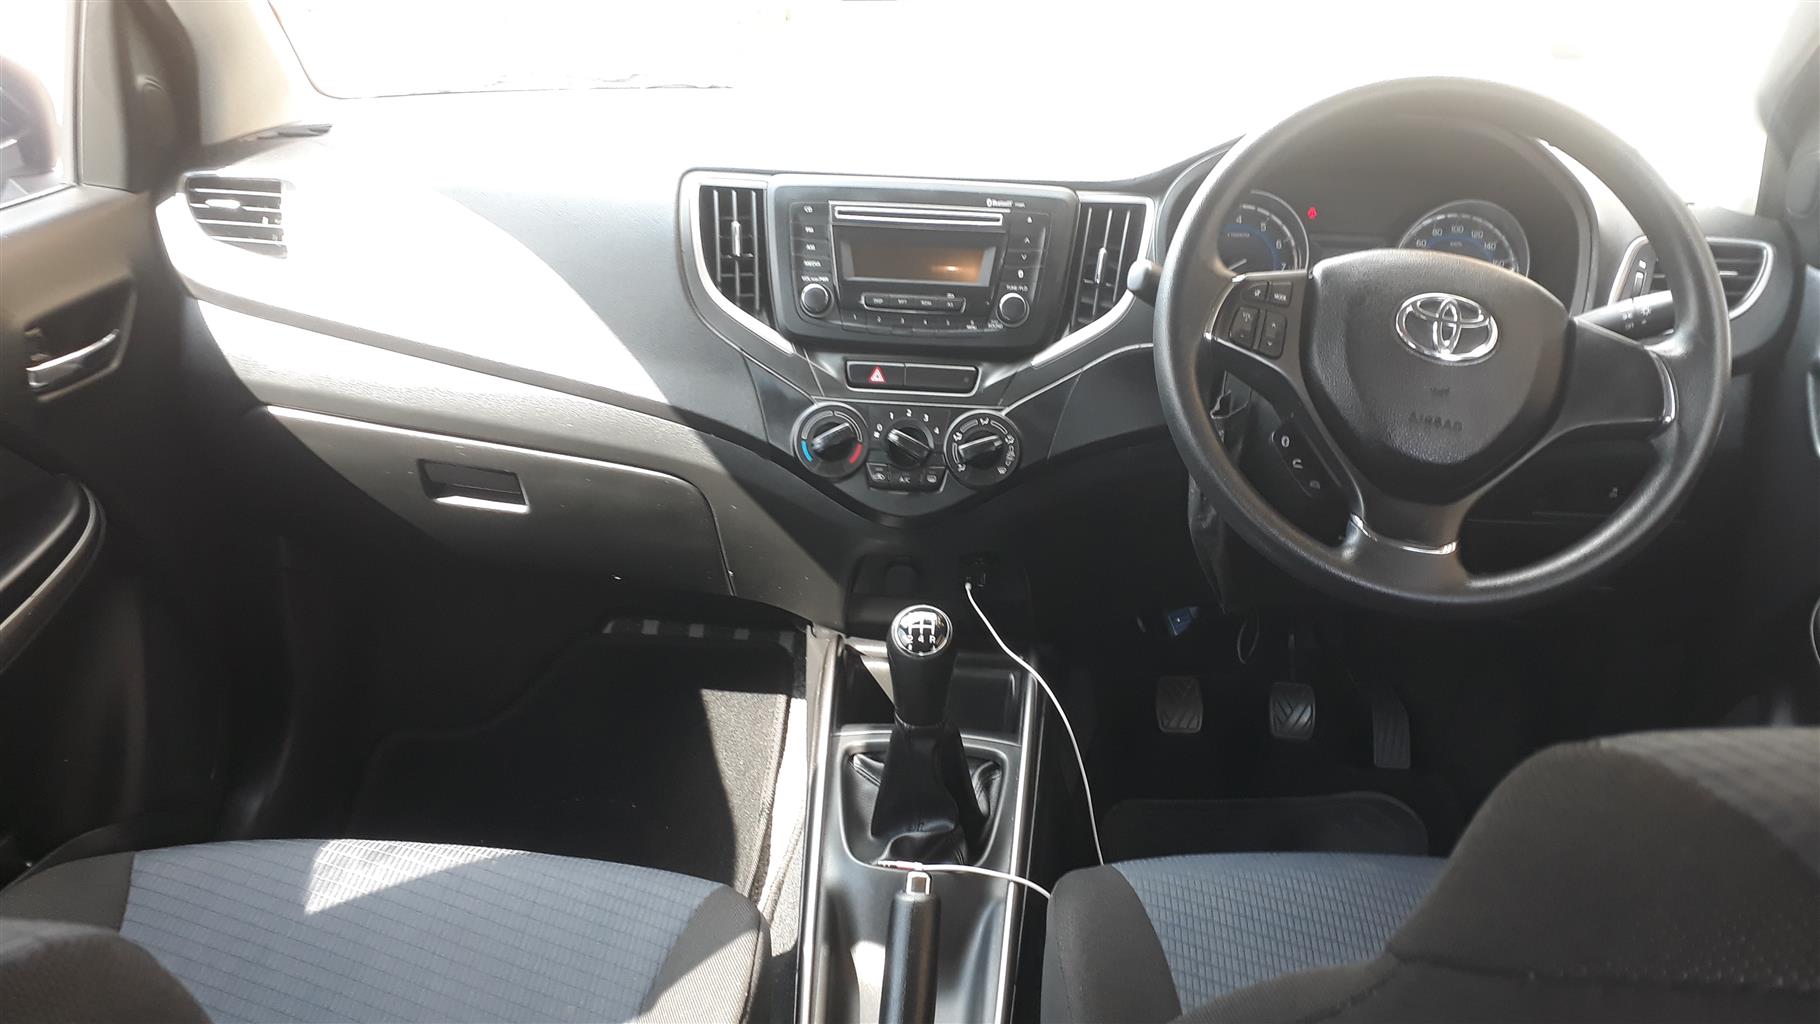 2020 Toyota Starlet 1.4 Manual Hatchback